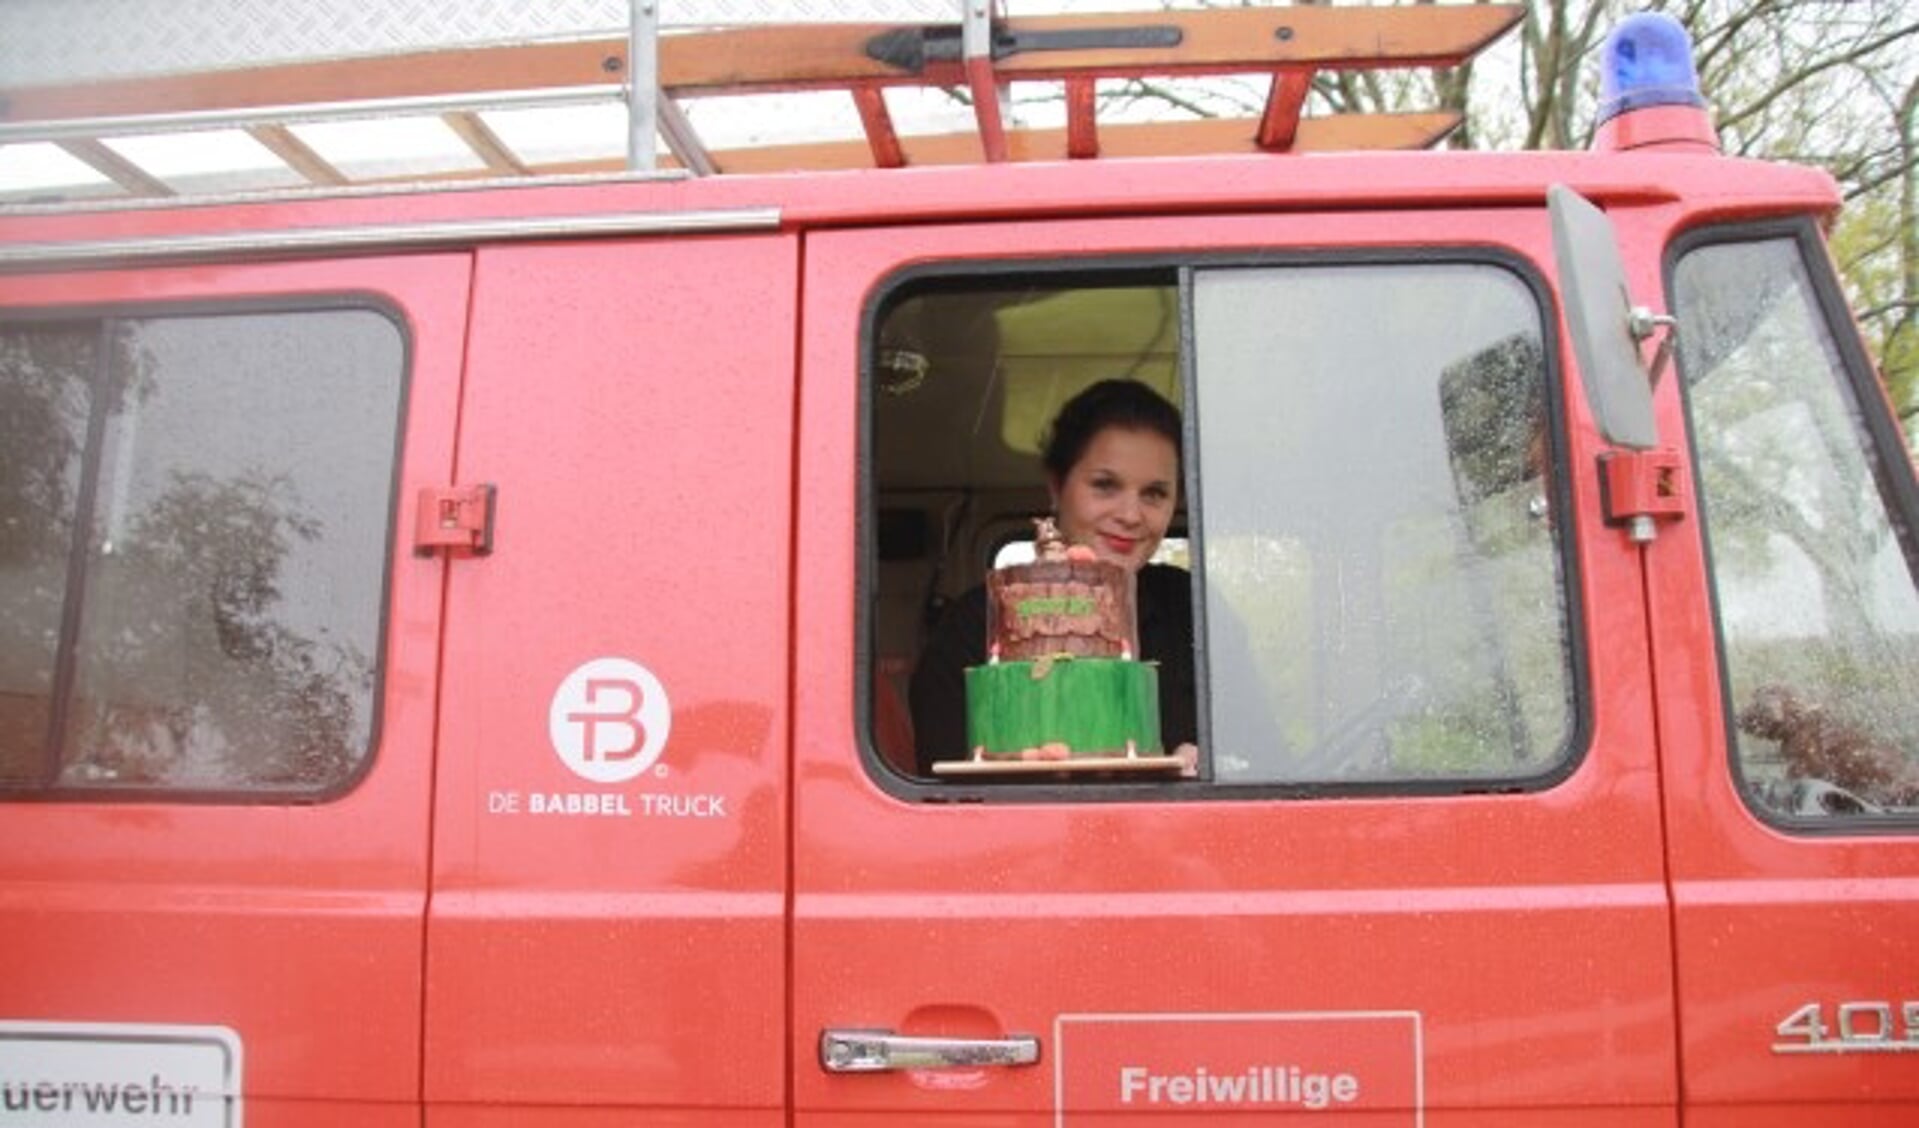 Miranda Buijing gaat haar heerlijke herfsttaart met de Babbeltruck bezorgen. Foto: Kees Stap